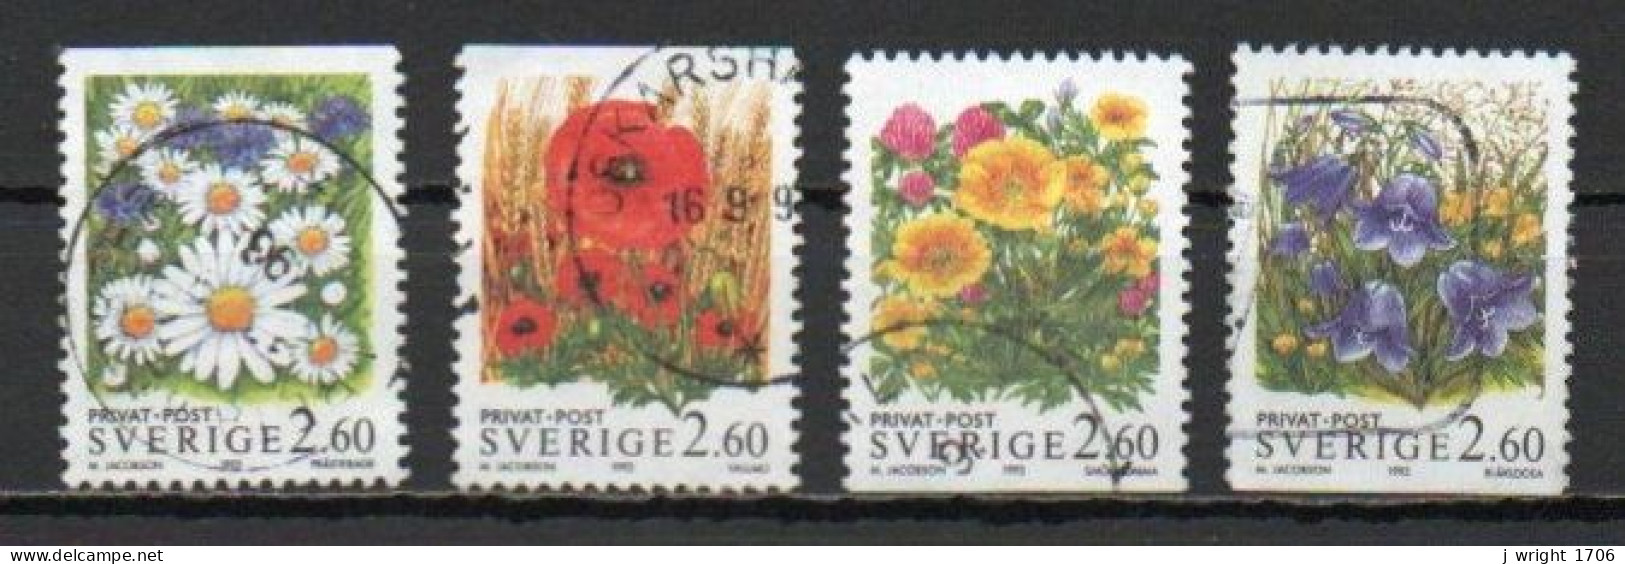 Sweden, 1993, Rebate Stamps/Flowers, Set, USED - Usados